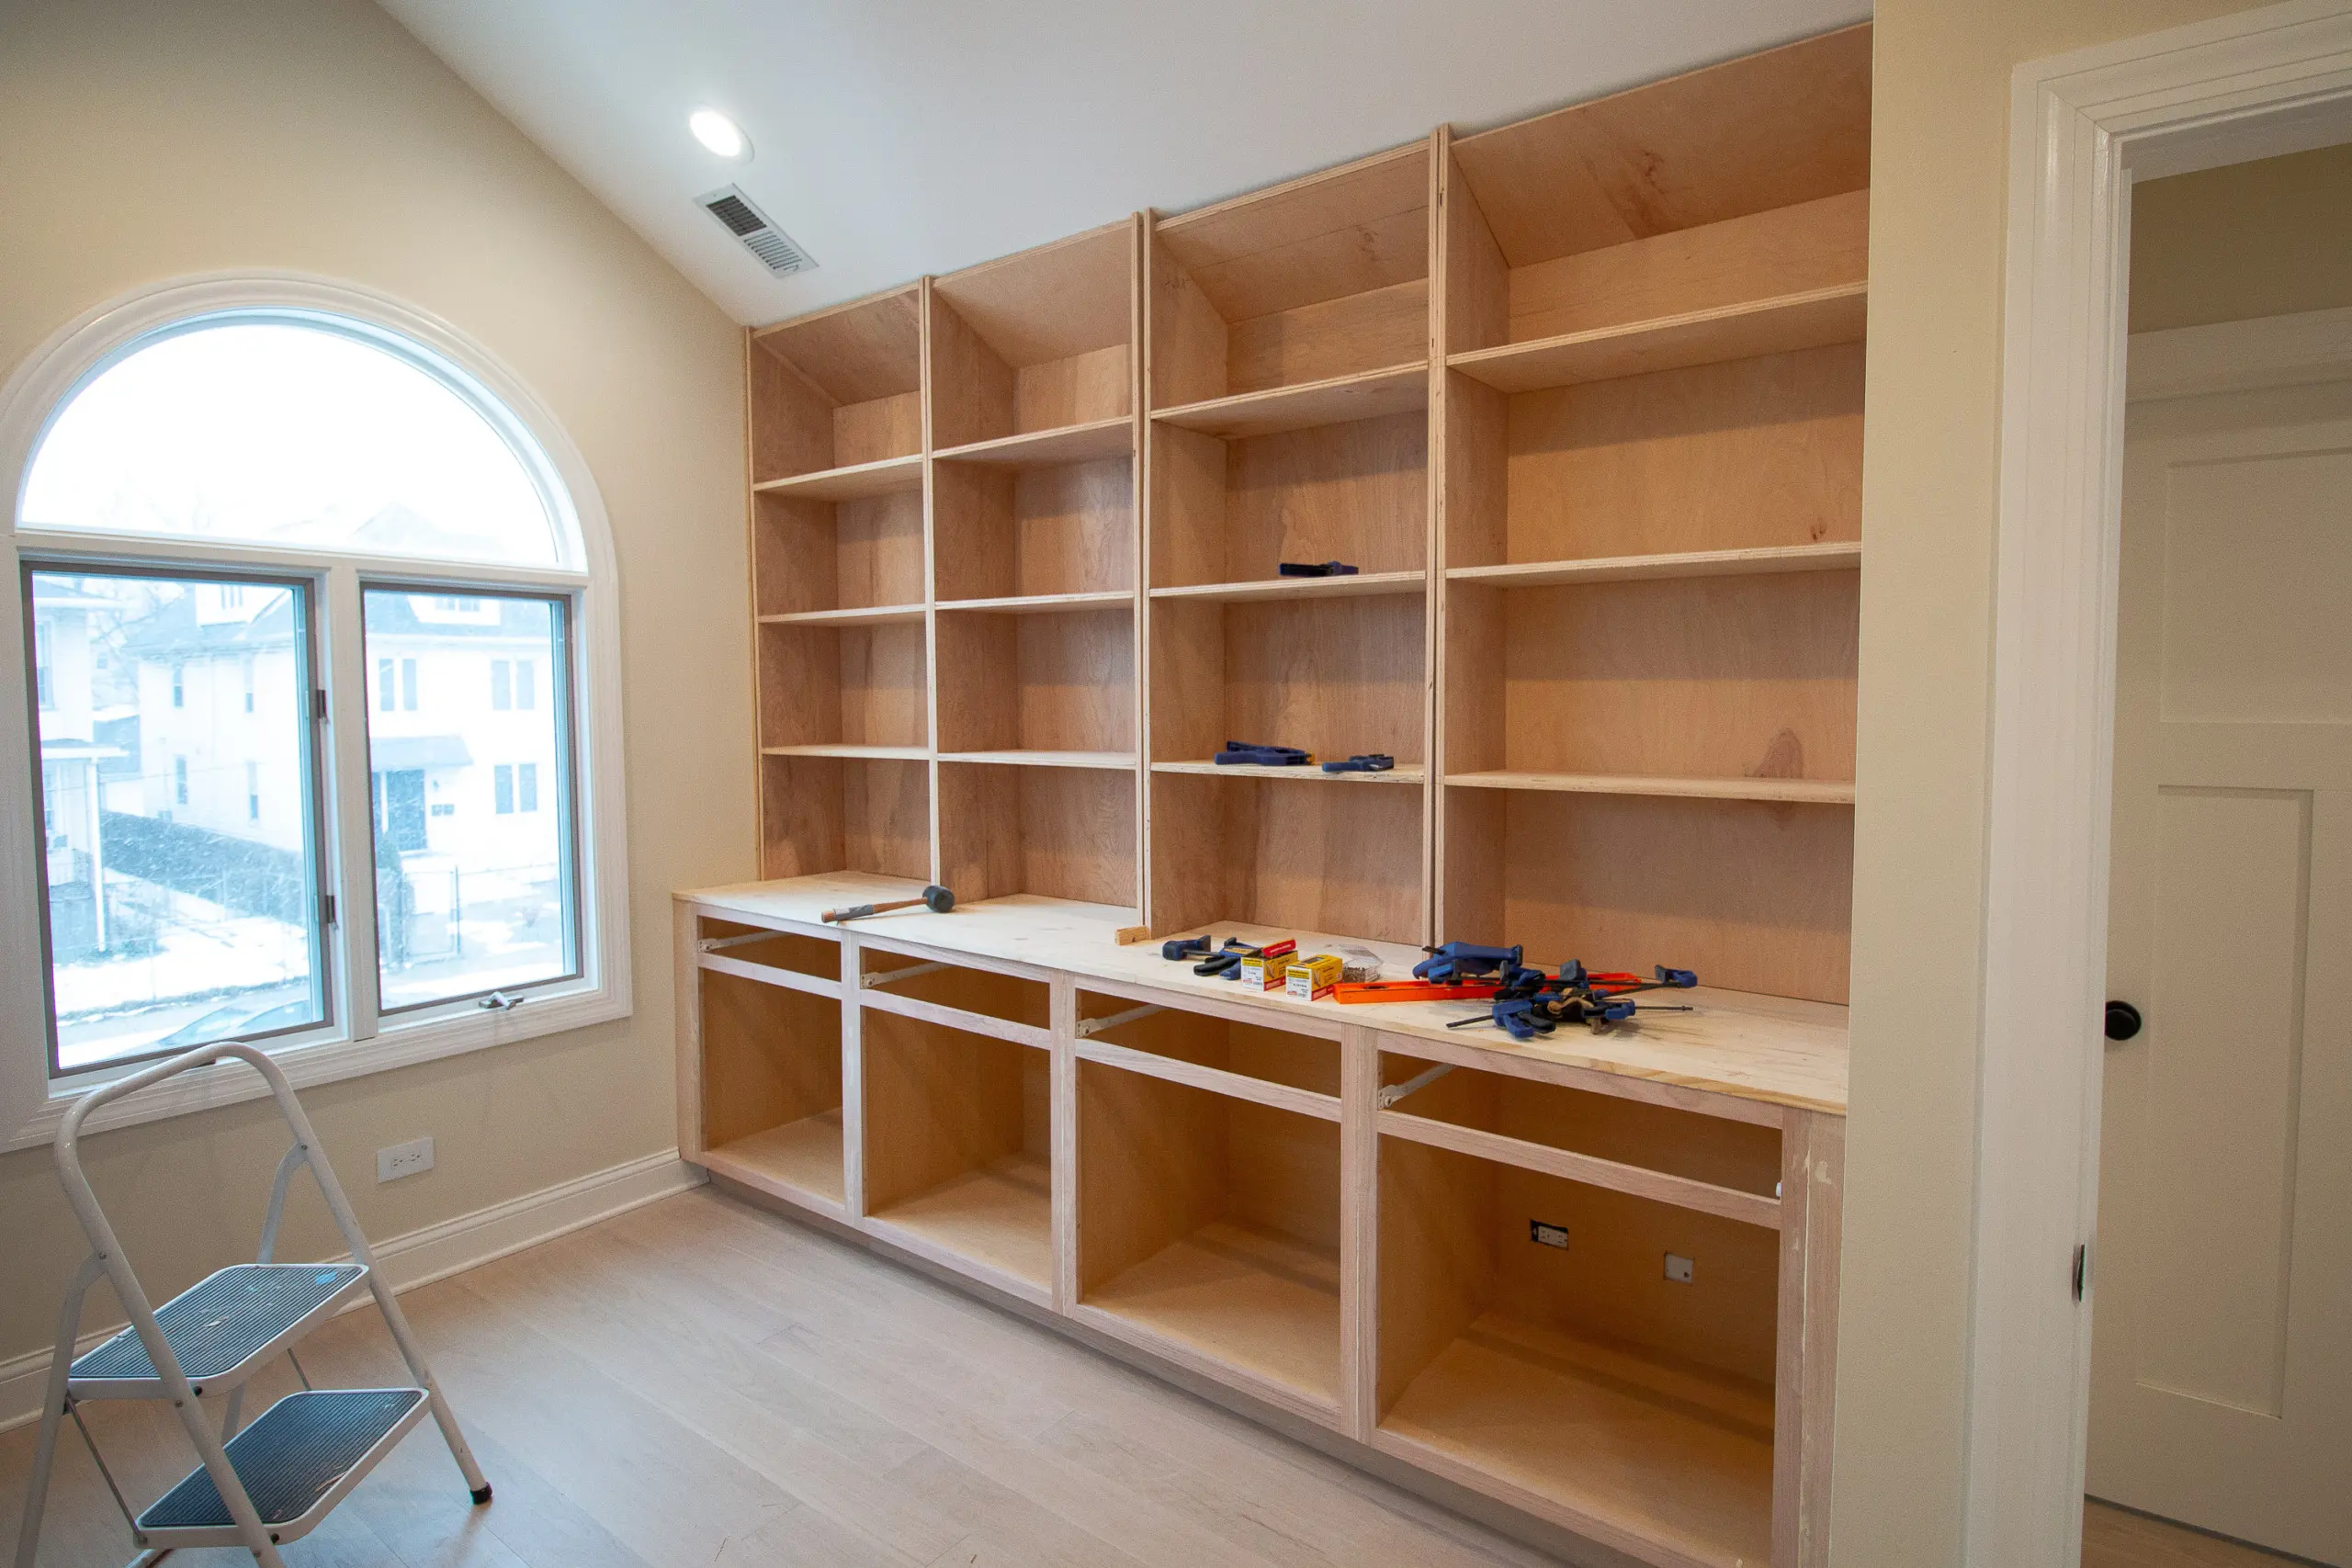 Build Diy Bookshelves For Built Ins